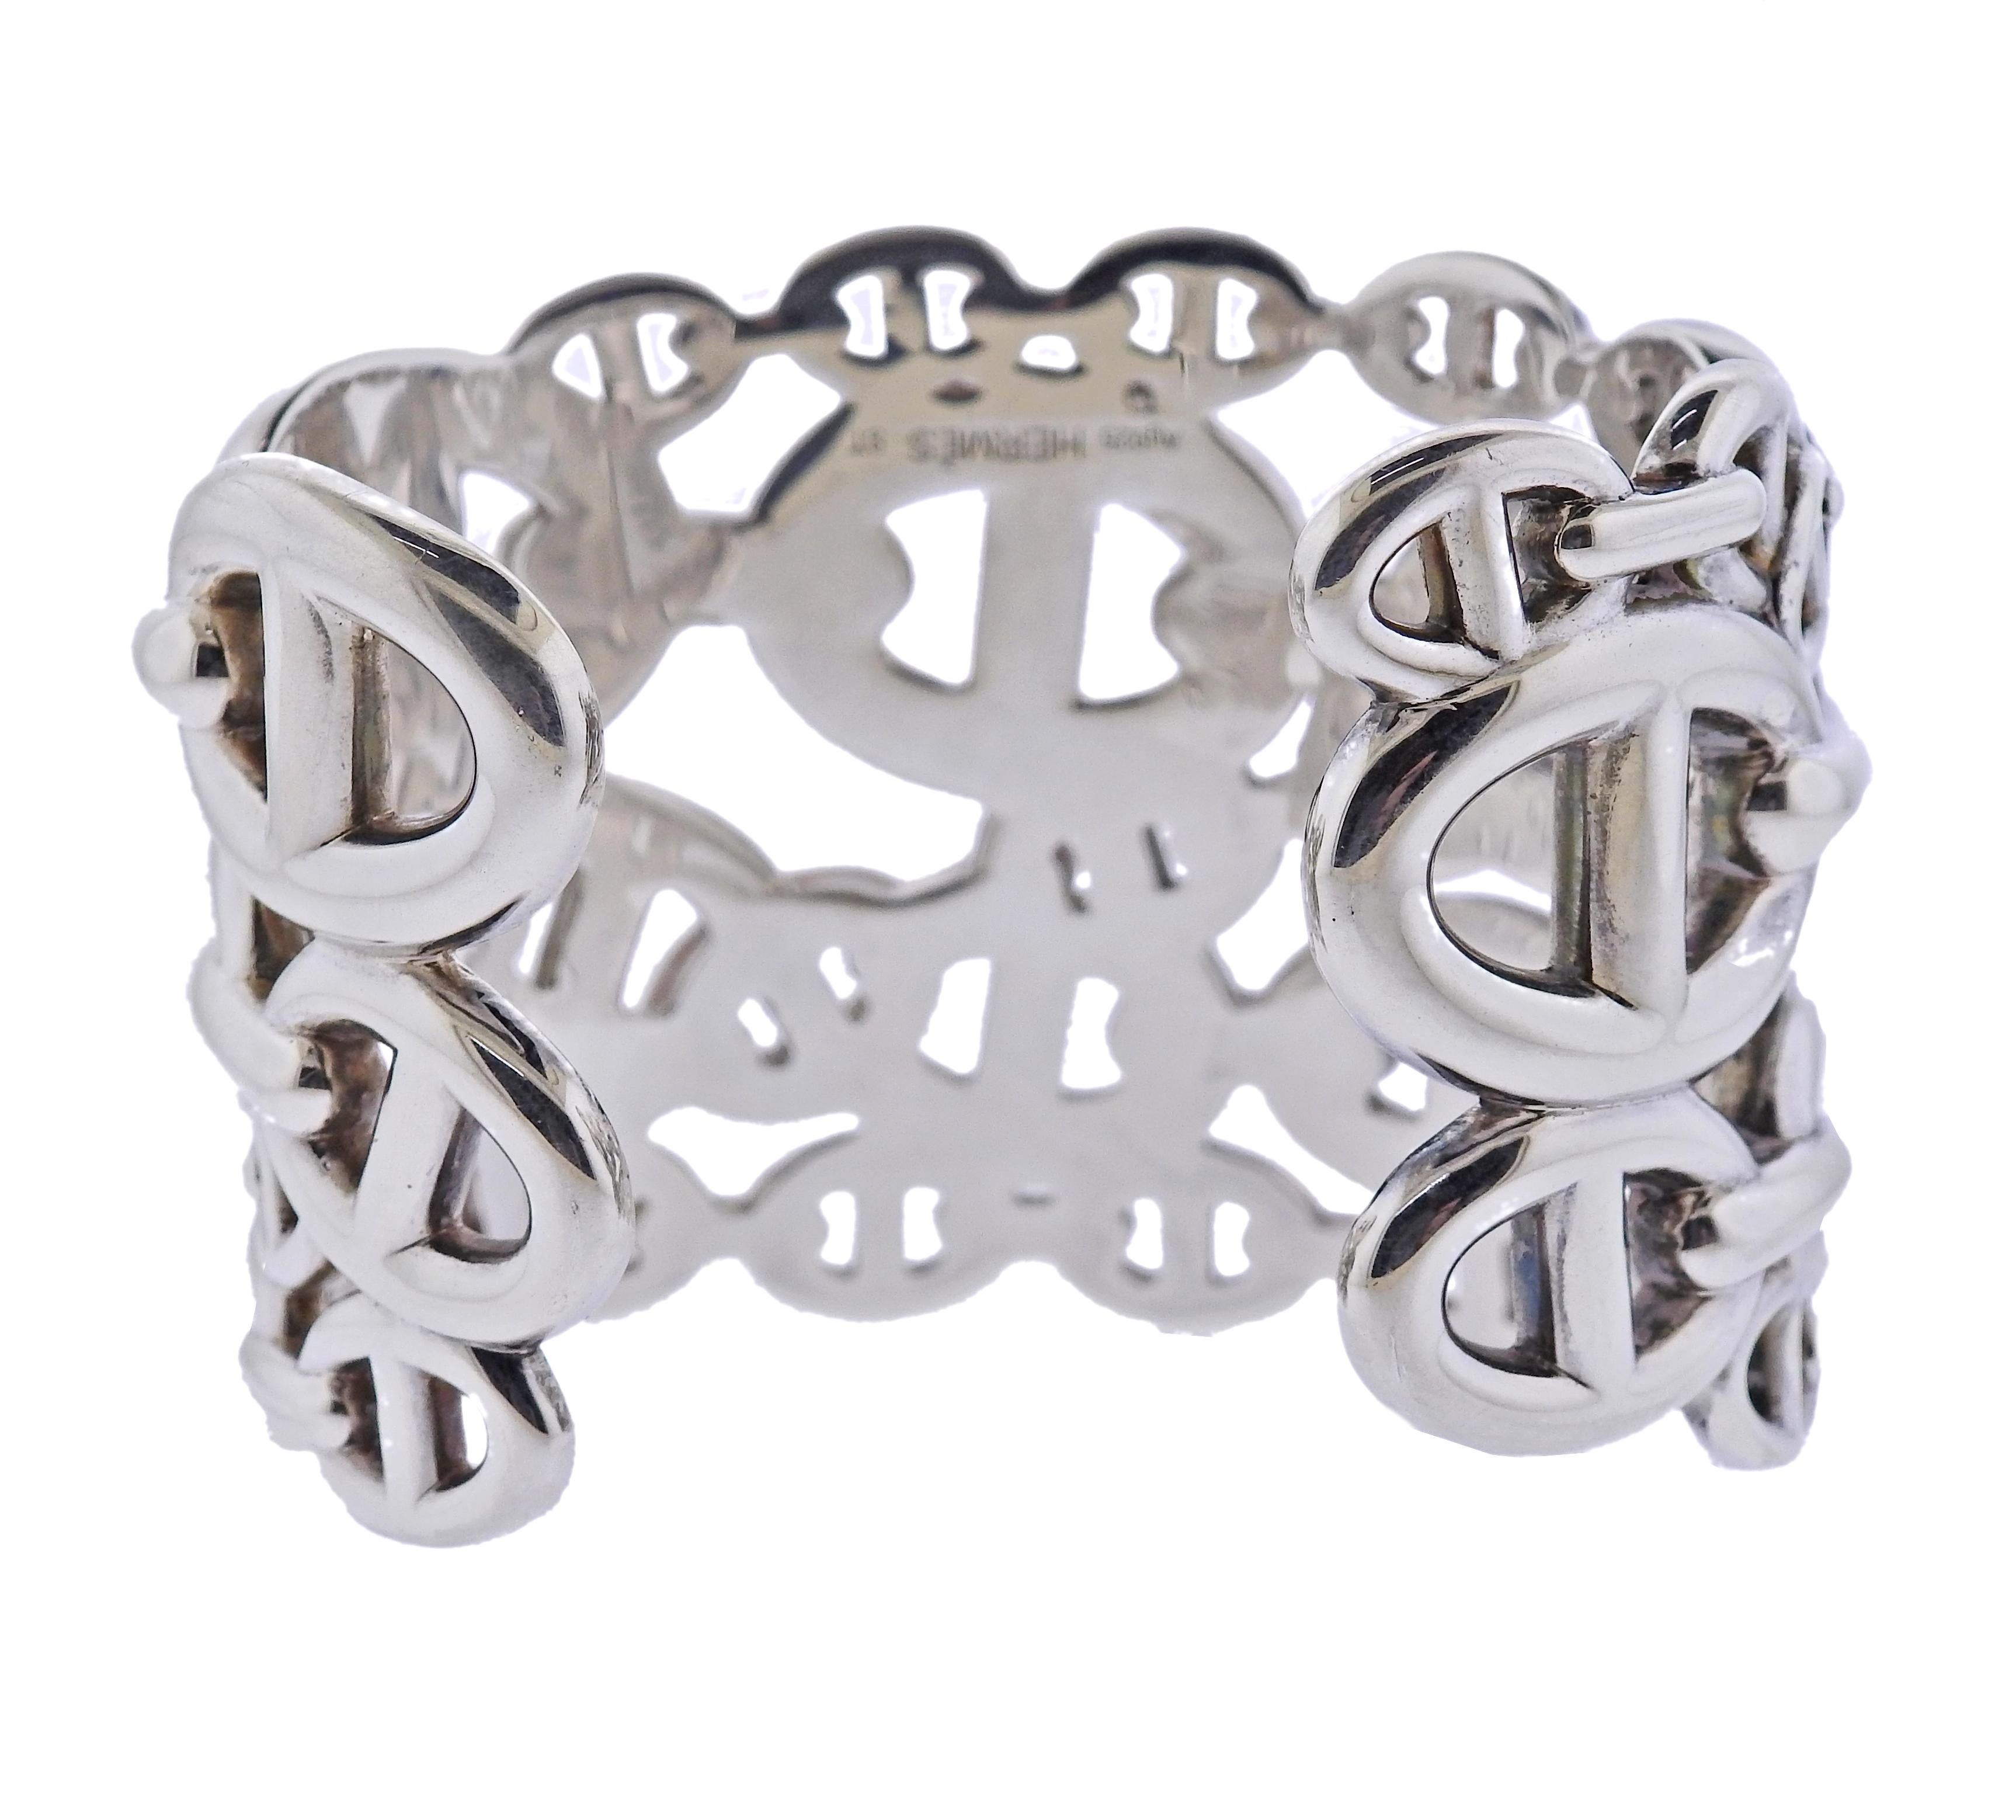 Hermes 925 Silver Chaine d'Ancre Enchainee Bracelet Bangle MM ST – MAISON  de LUXE